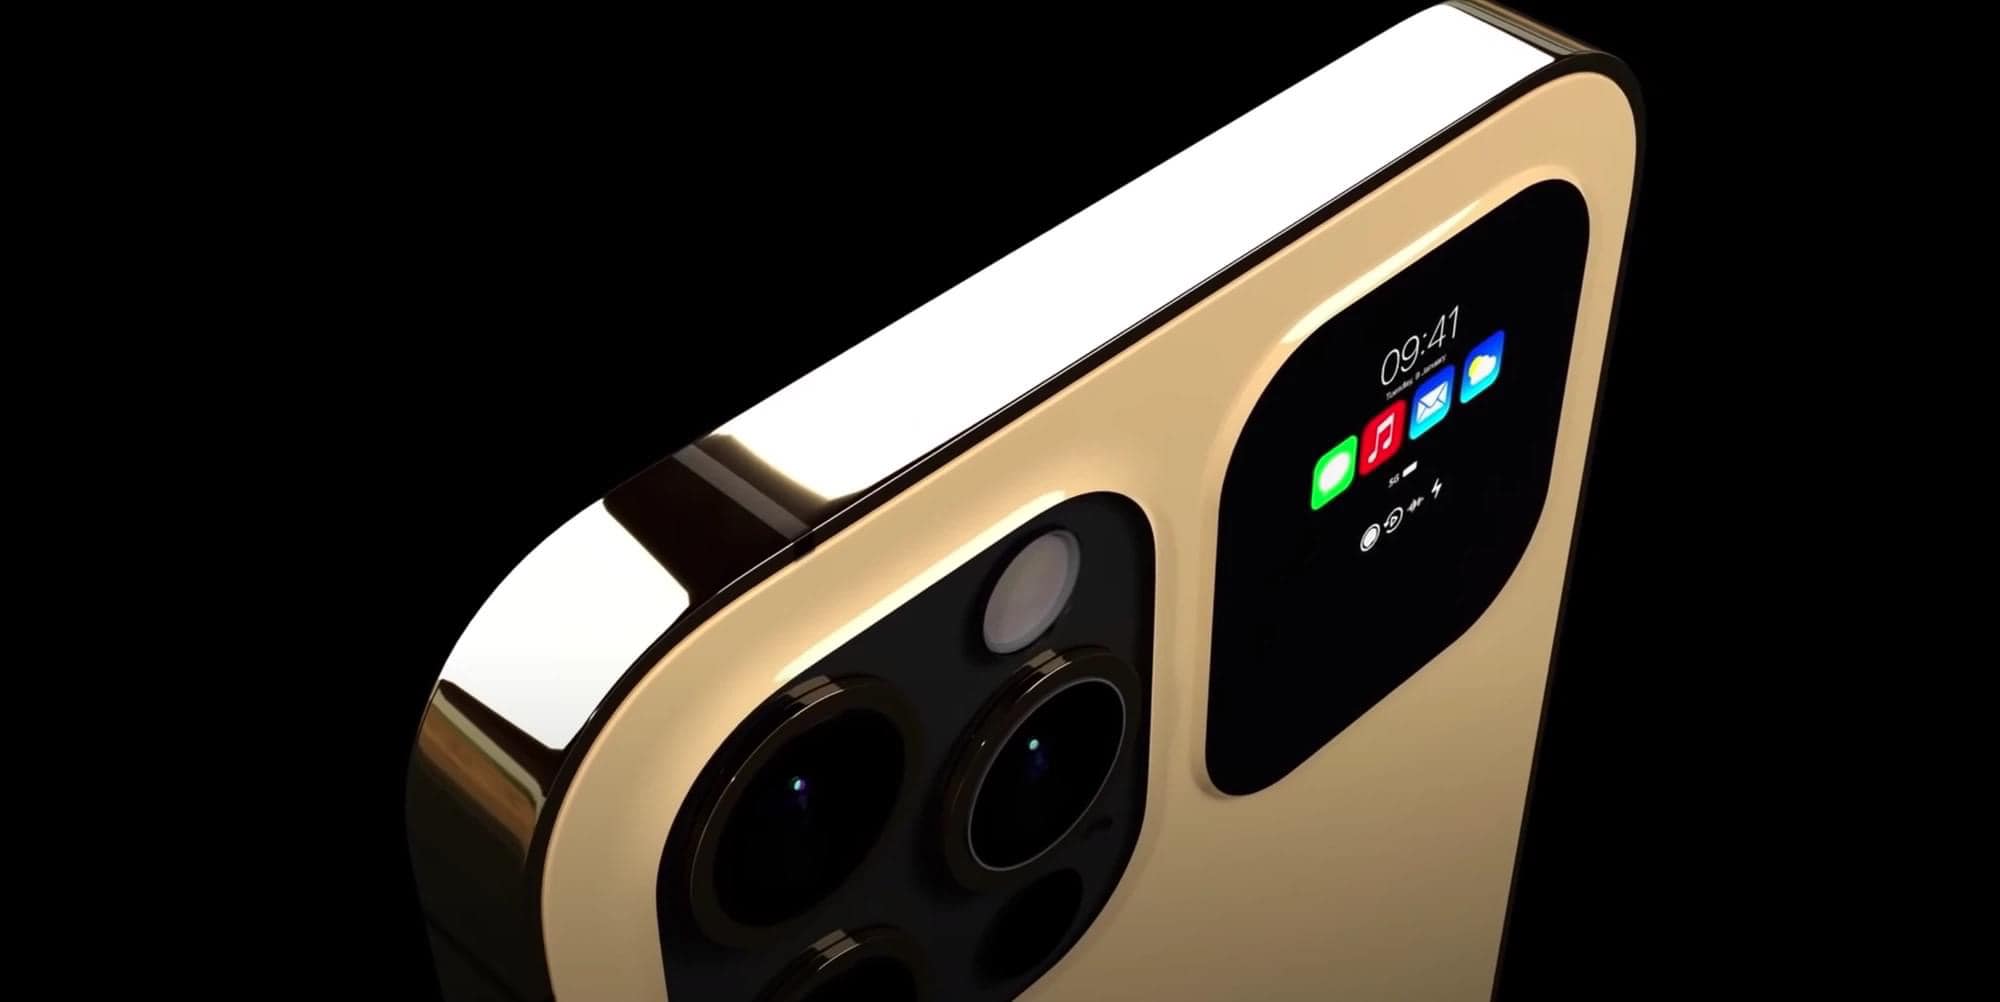 CỰC HOT: Lộ diện concept iPhone 13 Pro và Pro Max với màn hình phụ cực đẹp